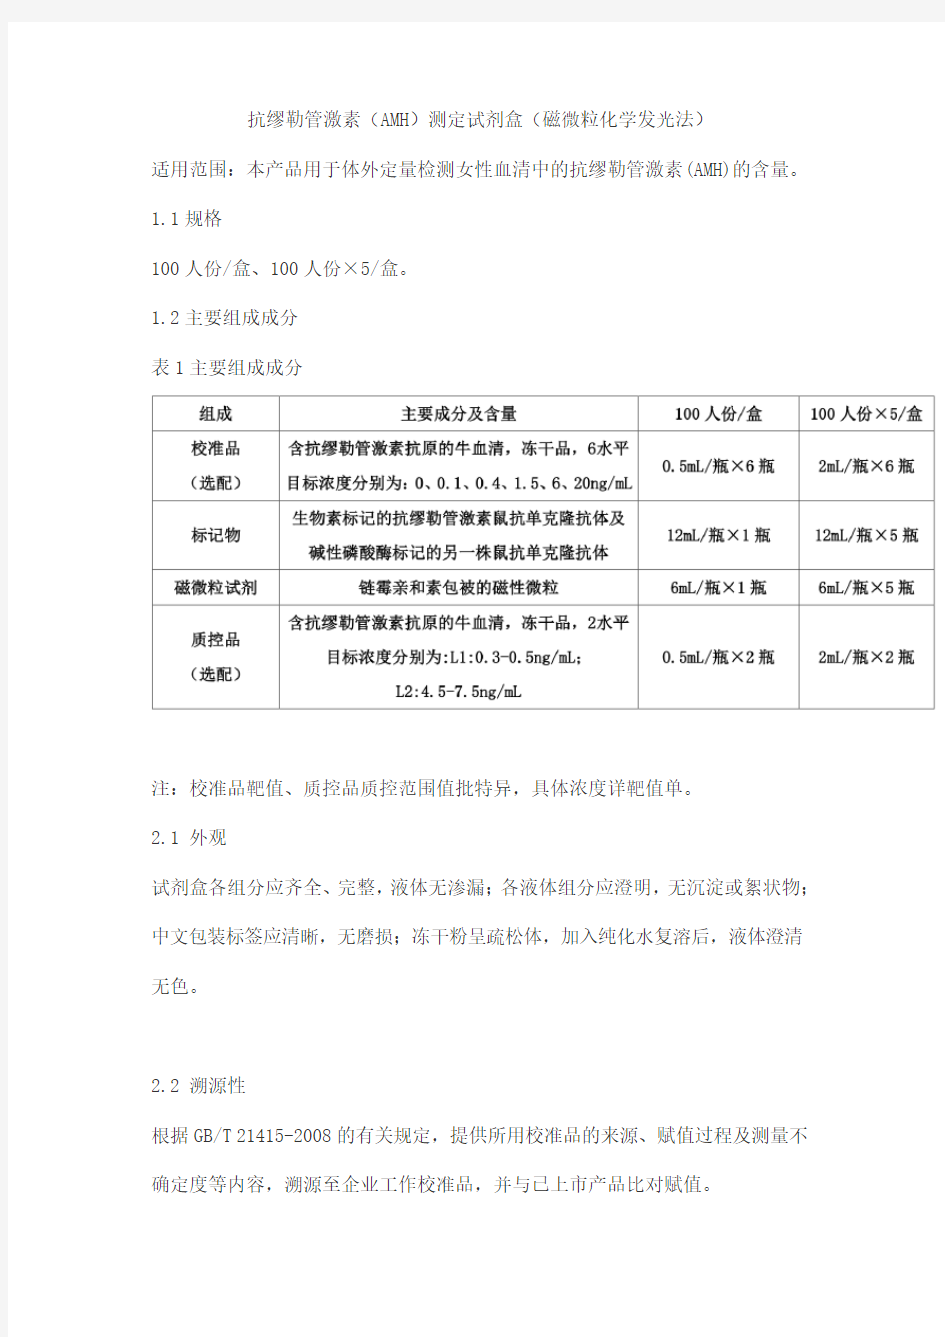 抗缪勒管激素(AMH)测定试剂盒(磁微粒化学发光法)产品技术要求北京华科泰生物